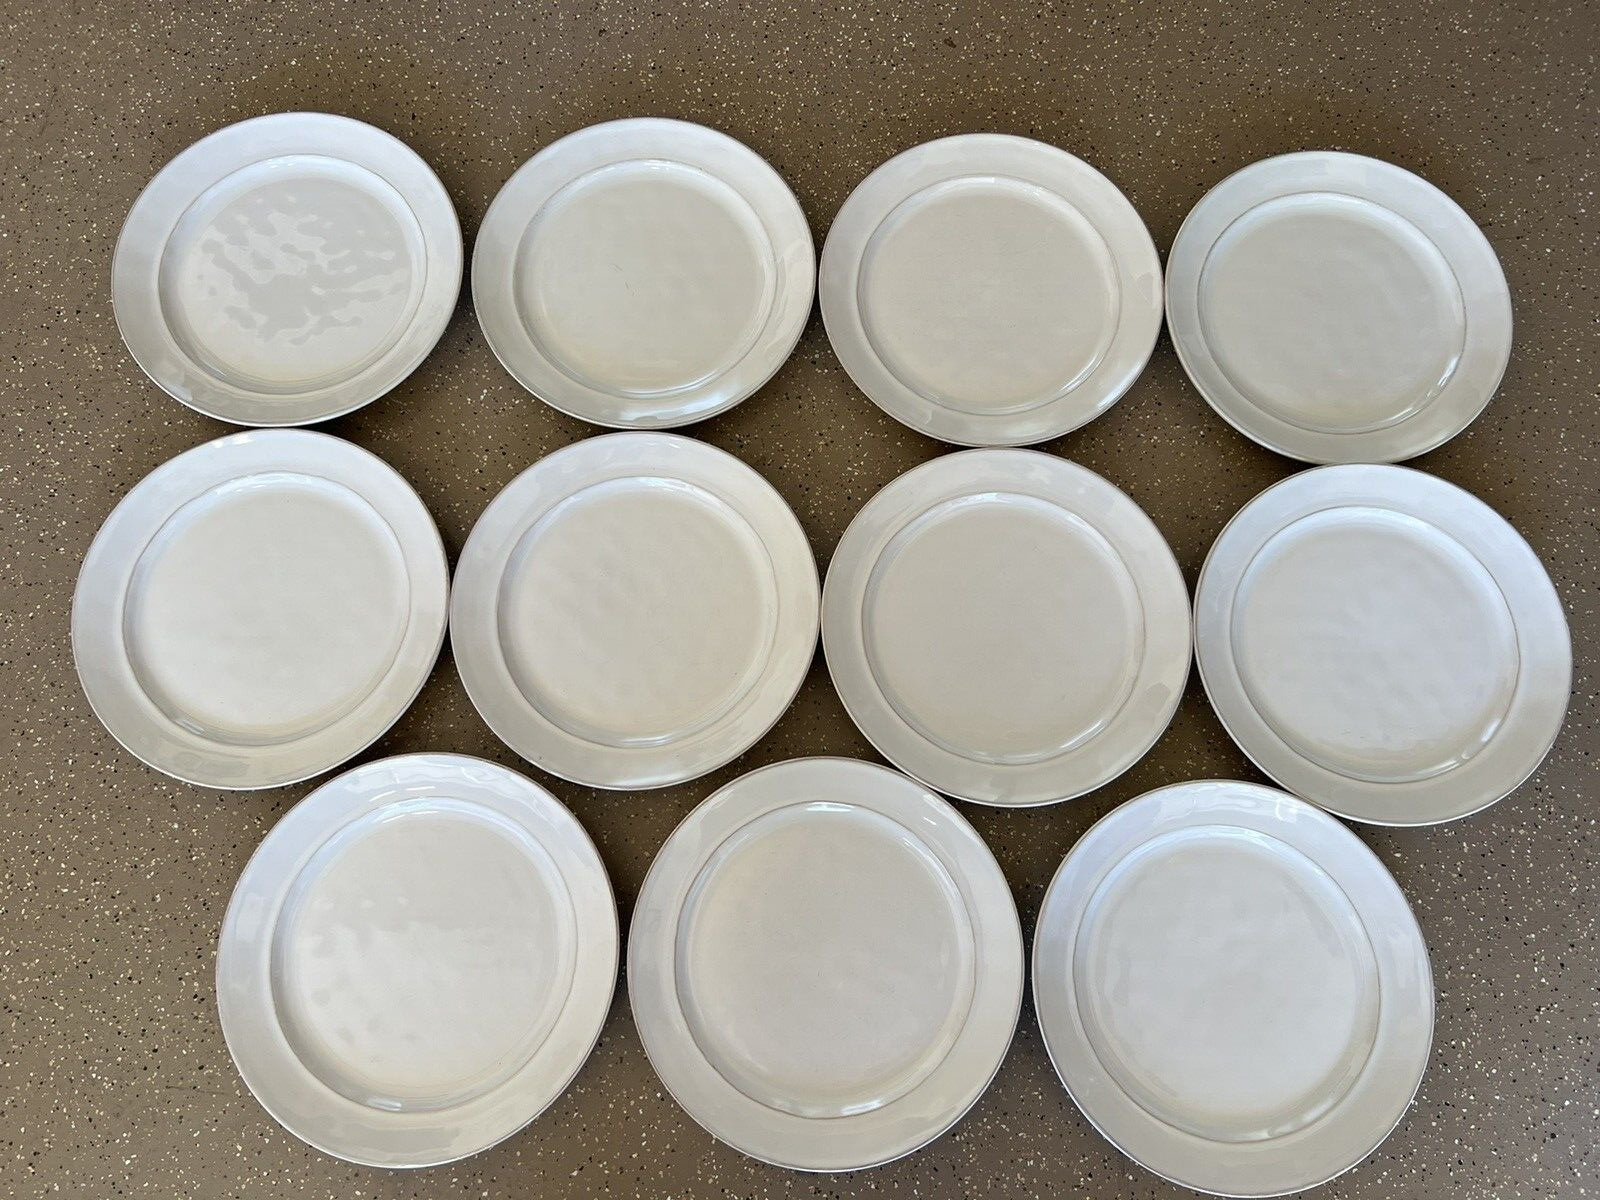 11 - Pottery Barn Cambria Creamy Off White Portugal Plates 9 1/2”